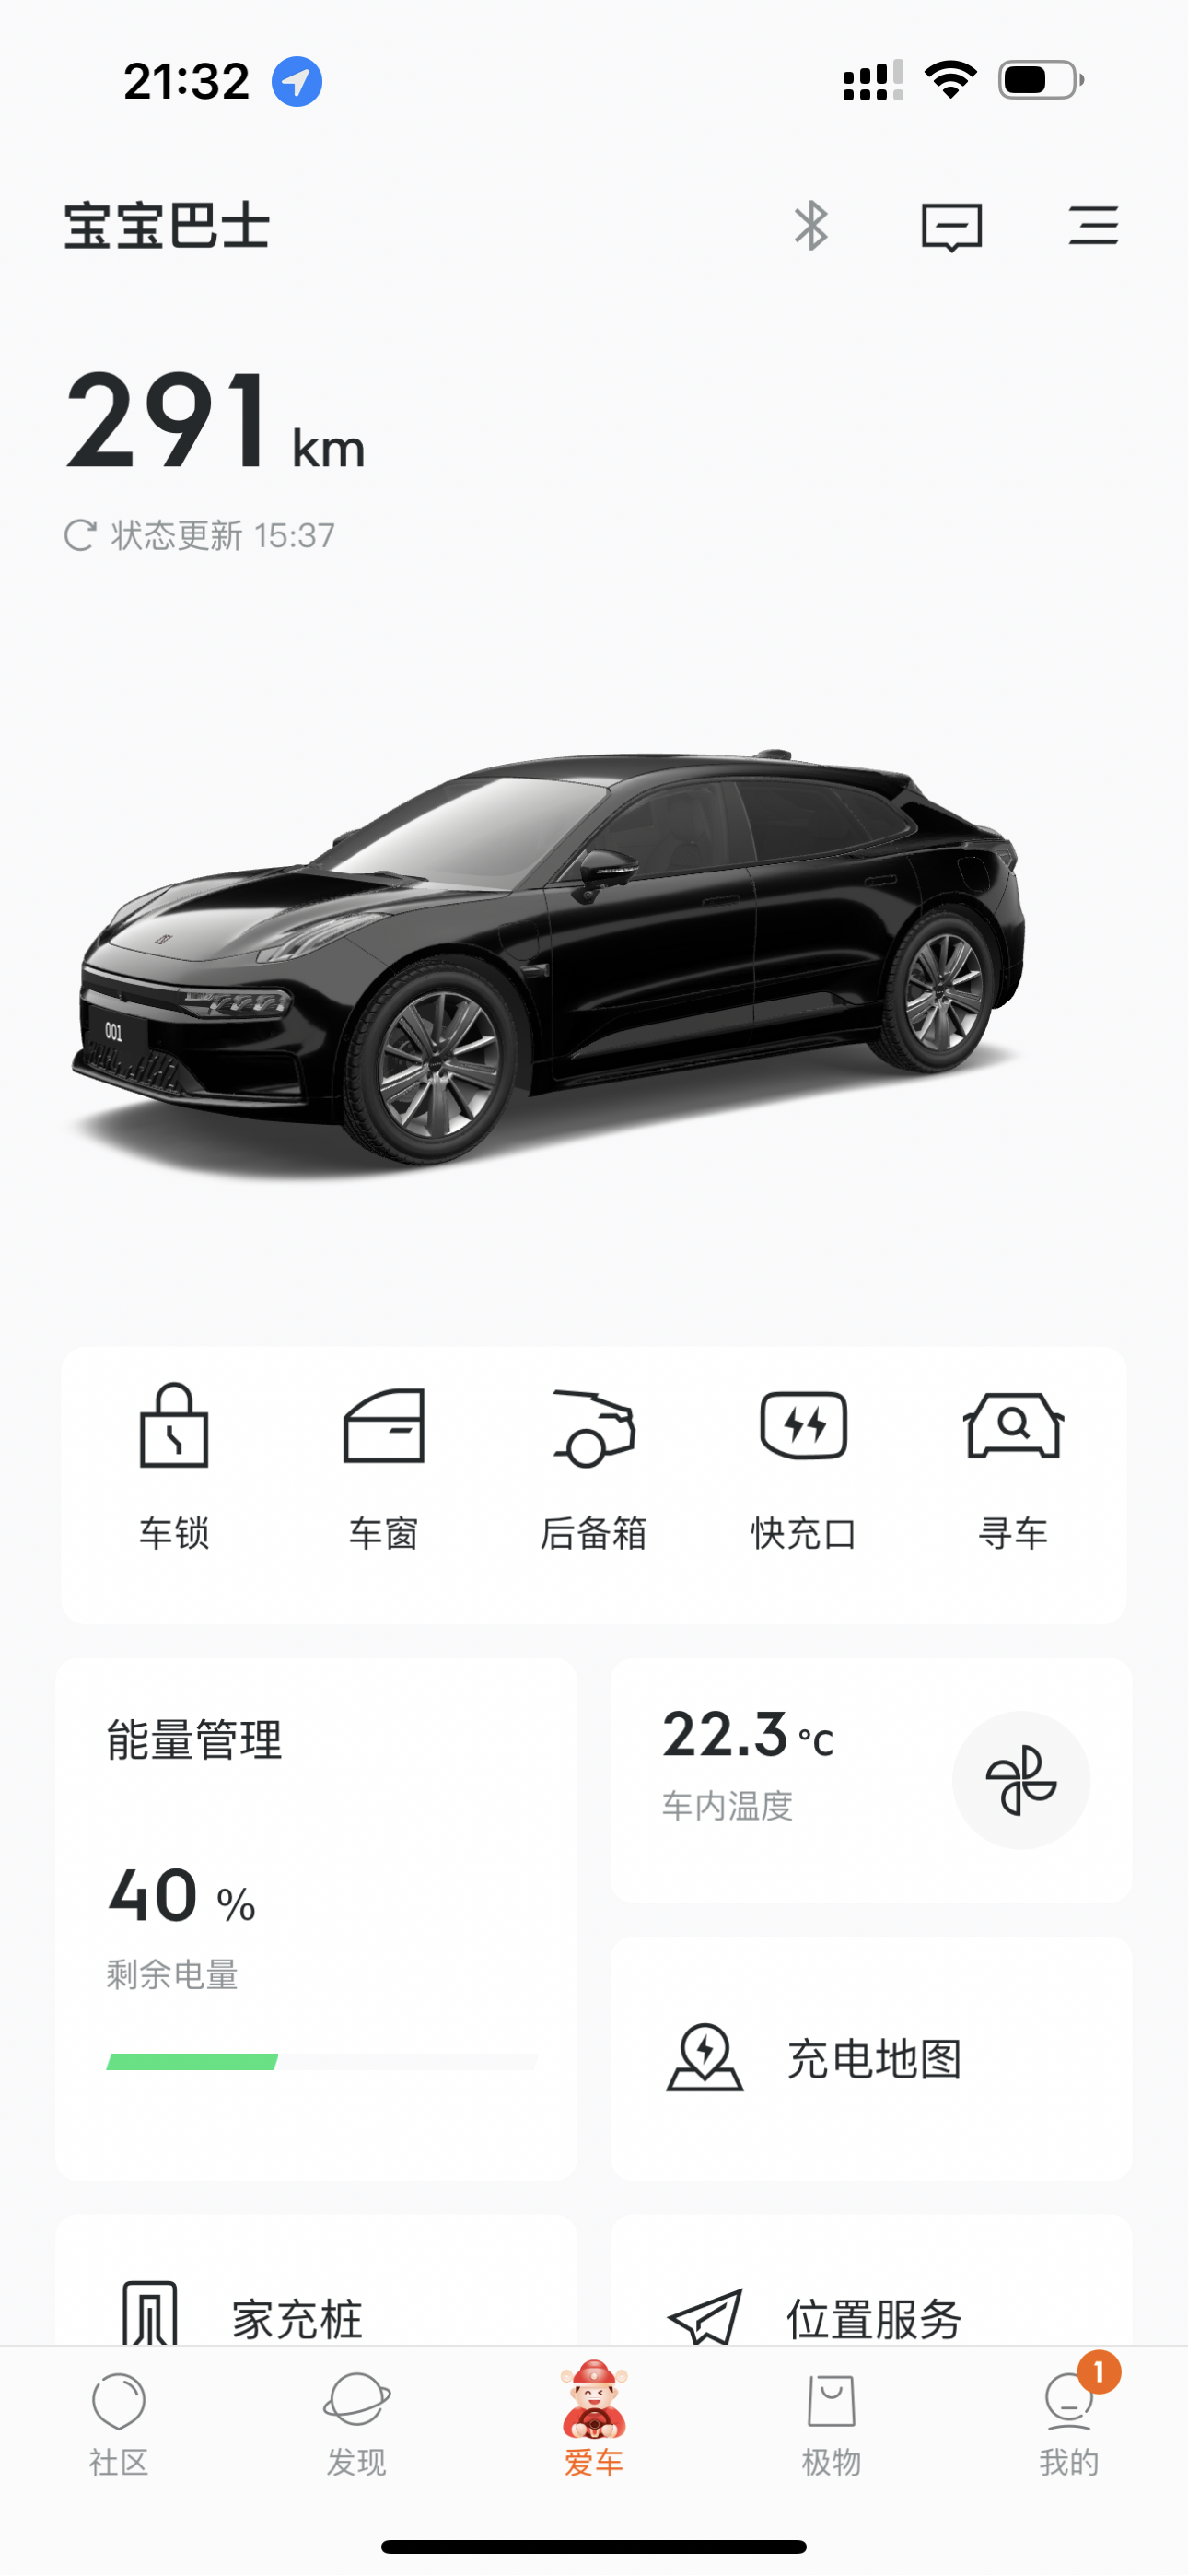 极氪001官图发布 品牌/新车将于4月15日亮相 -车神榜